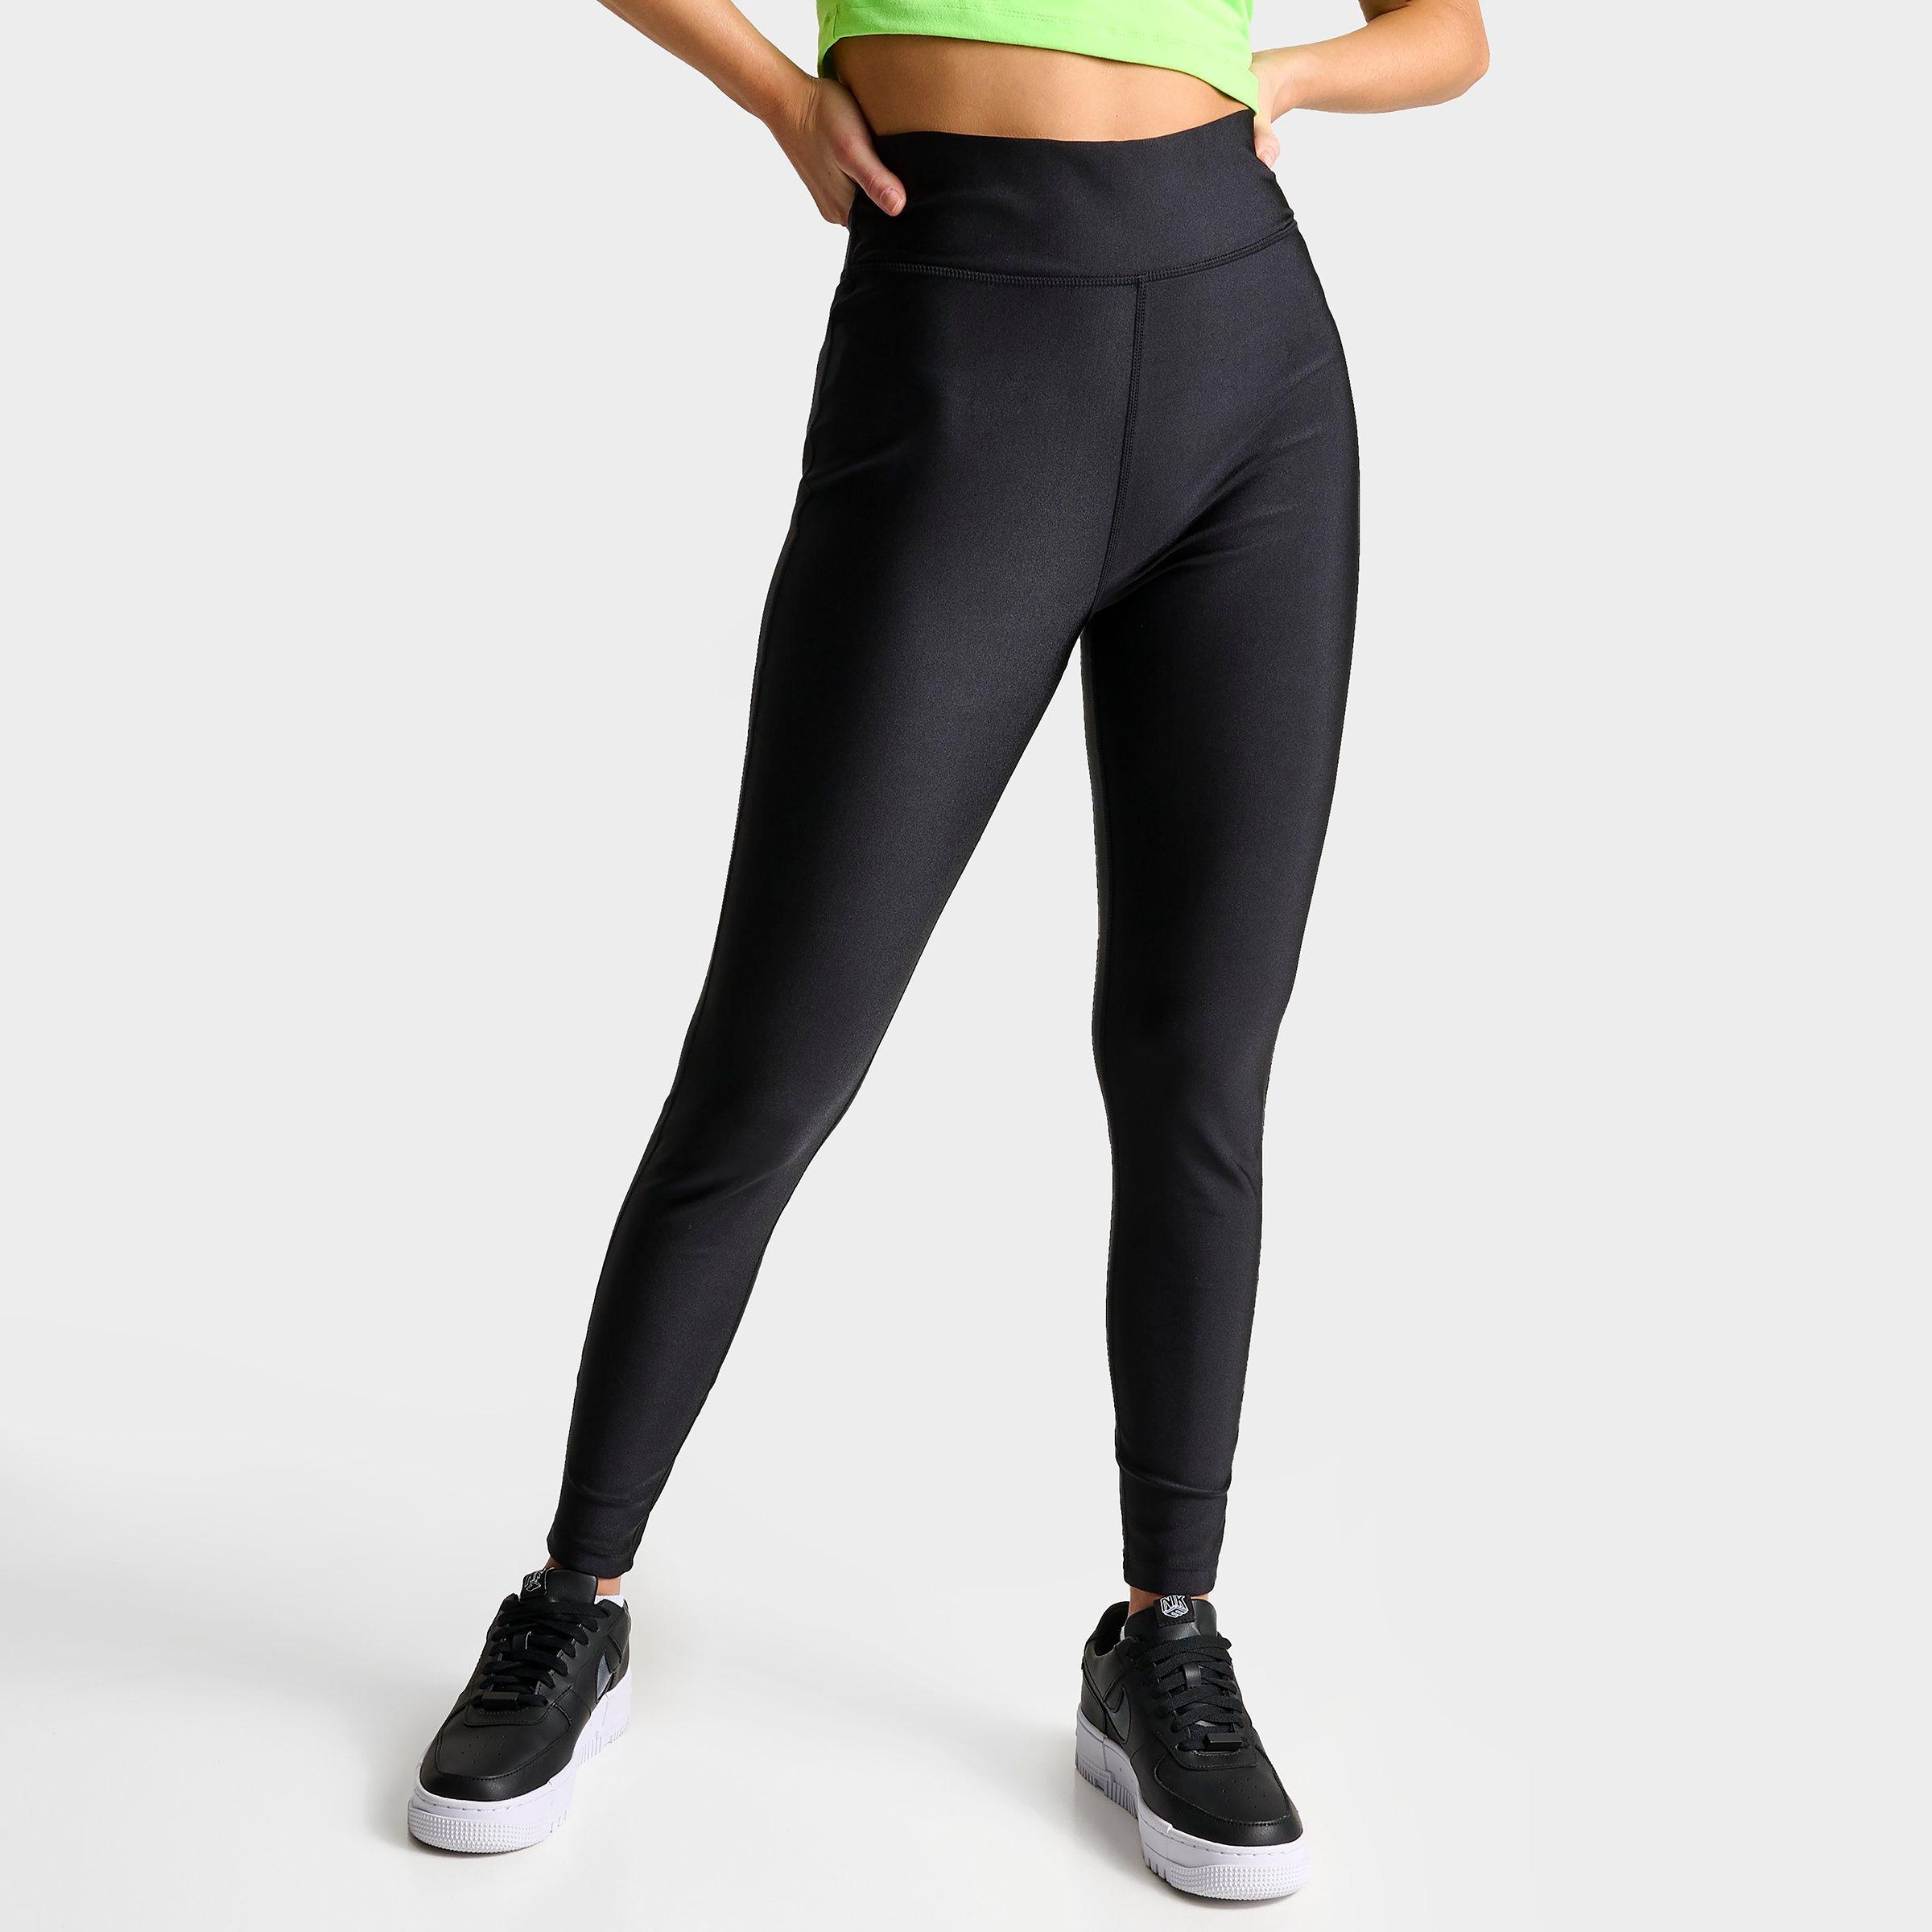 Women's Nike One Swoosh High-Waisted Full-Length Leggings